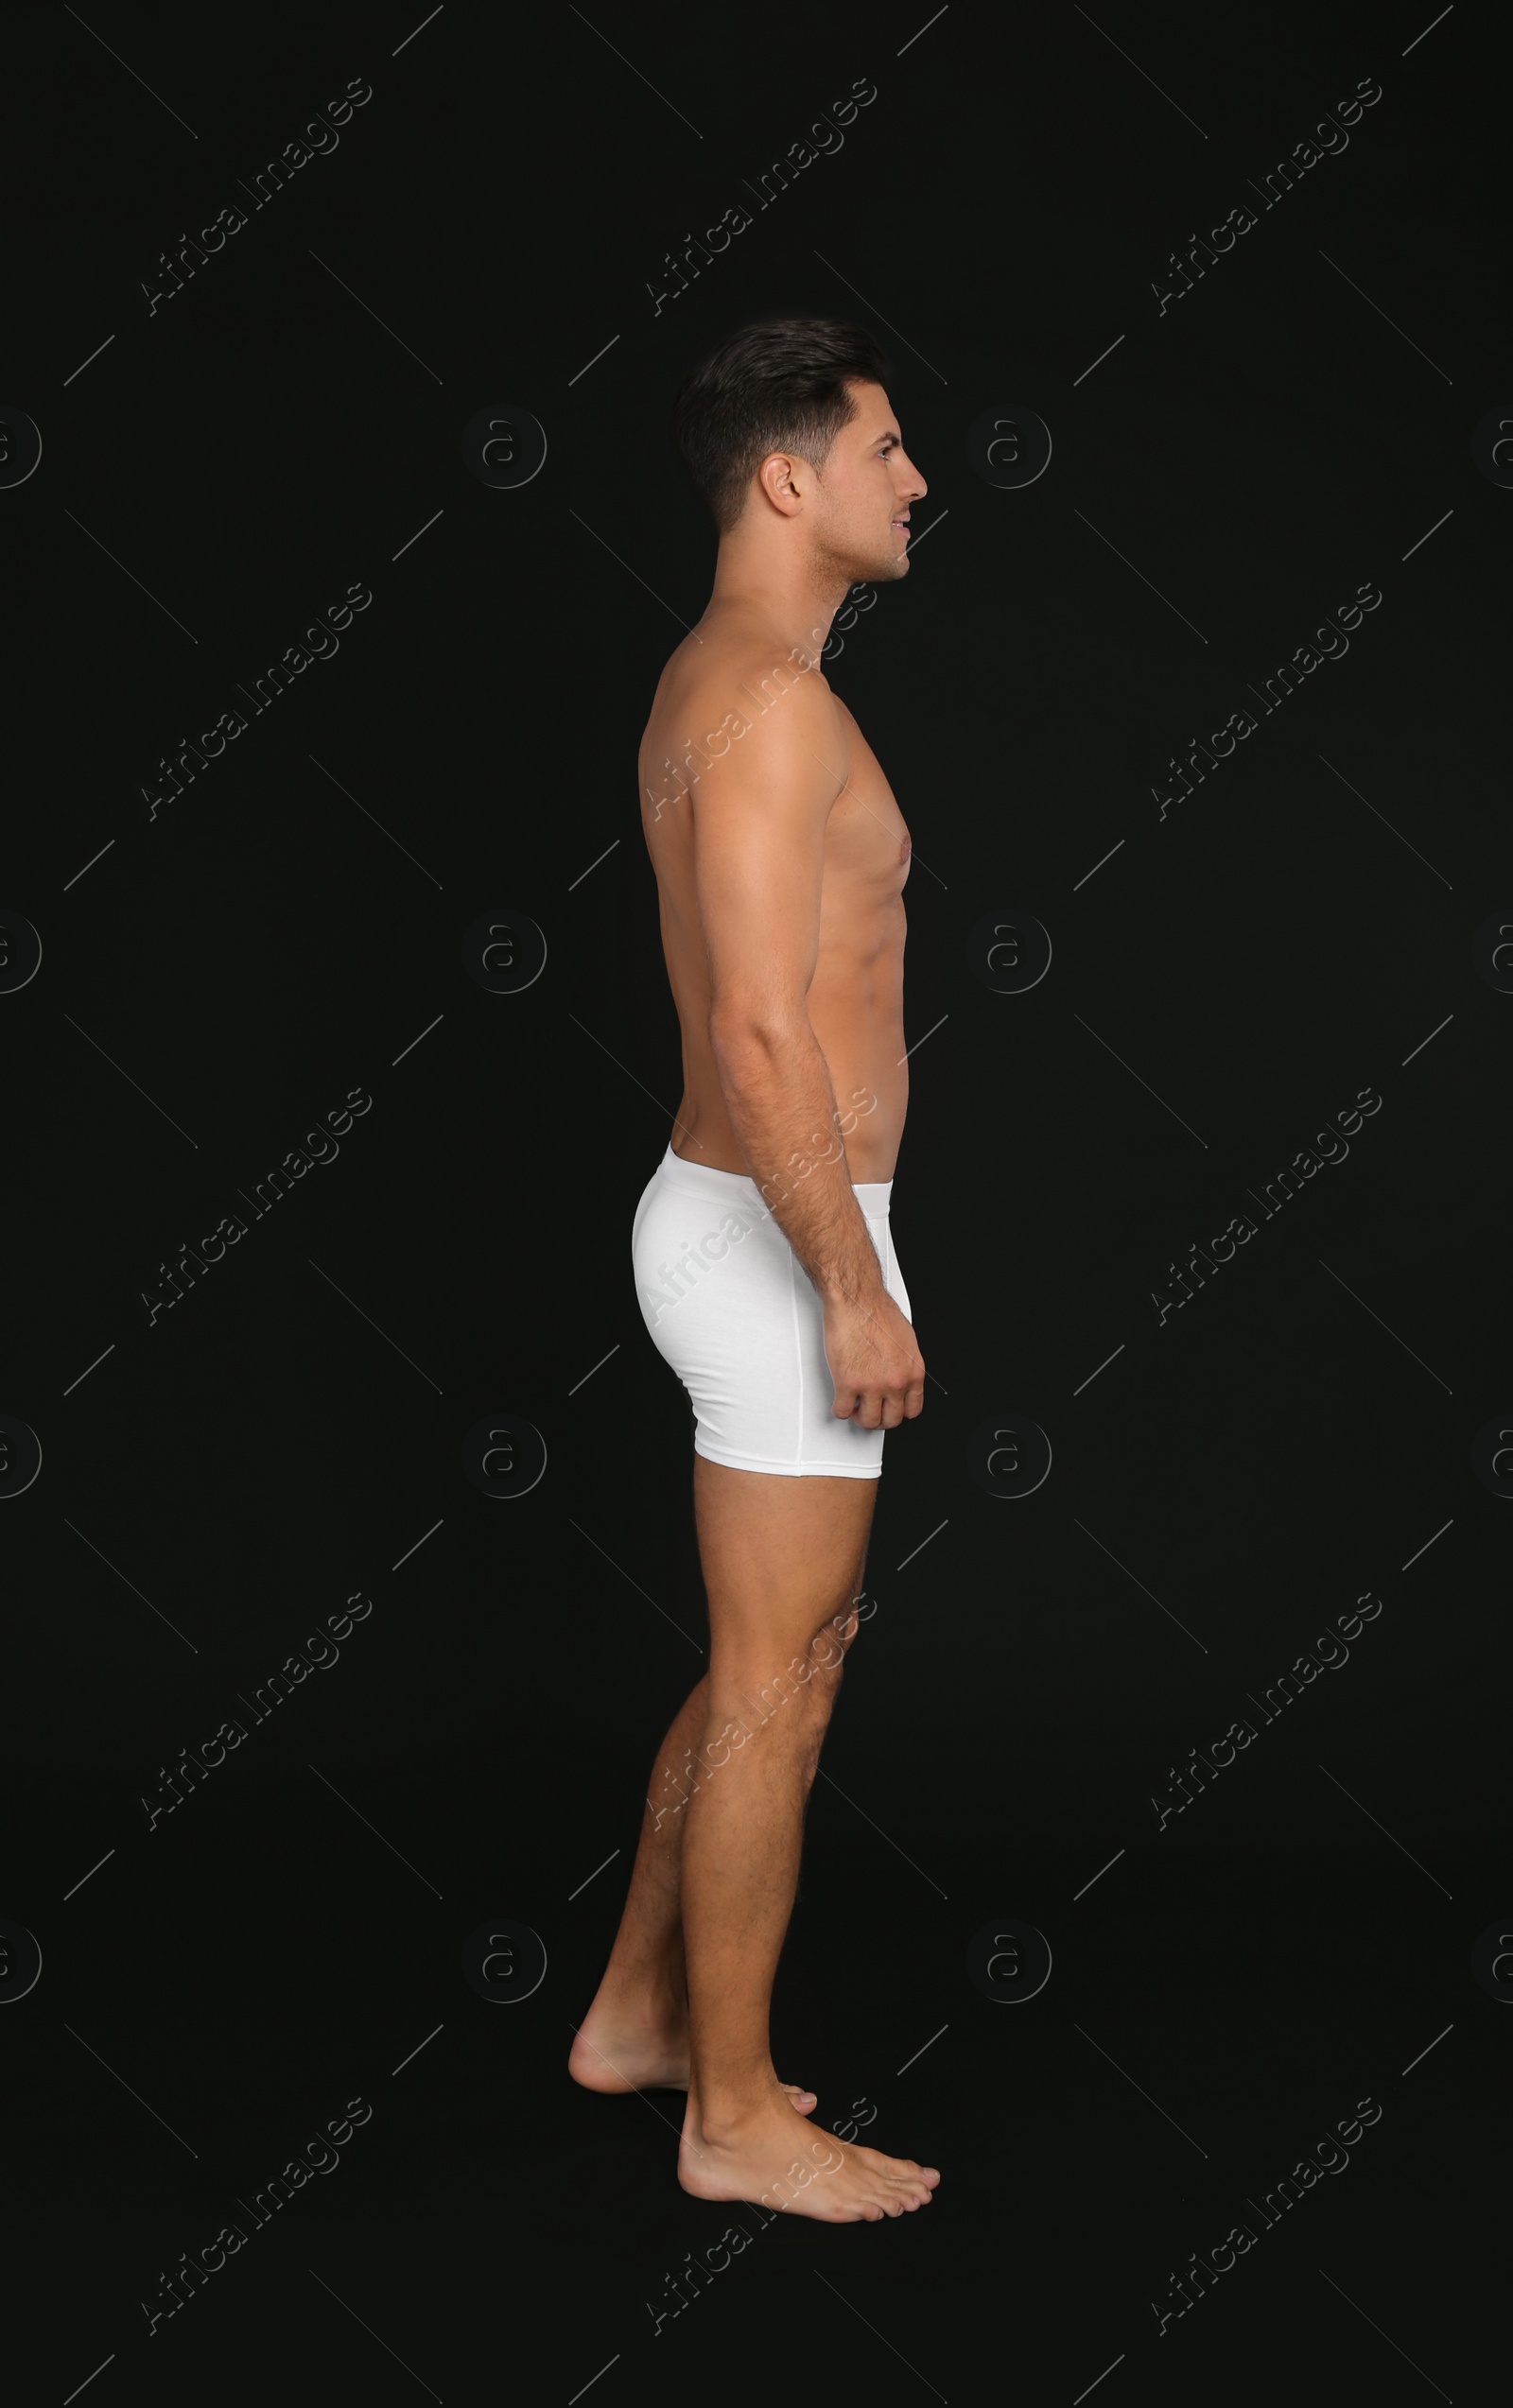 Photo of Handsome man in underwear on black background